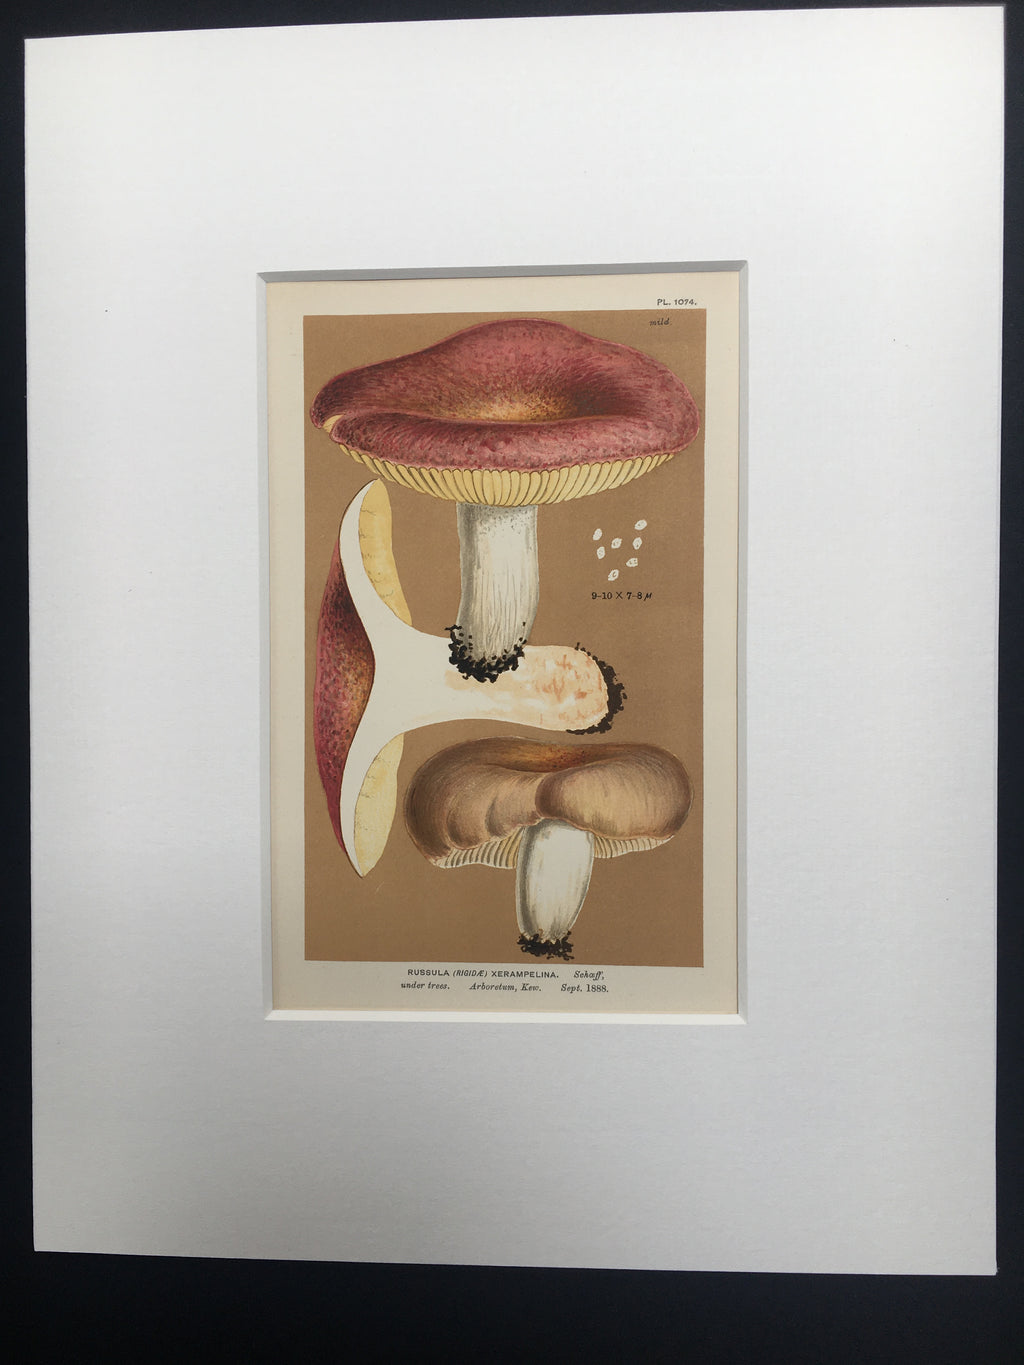 Late c19th Original Book Plate Mushroom - Russula (Rigidae) Xerampelina - KEW